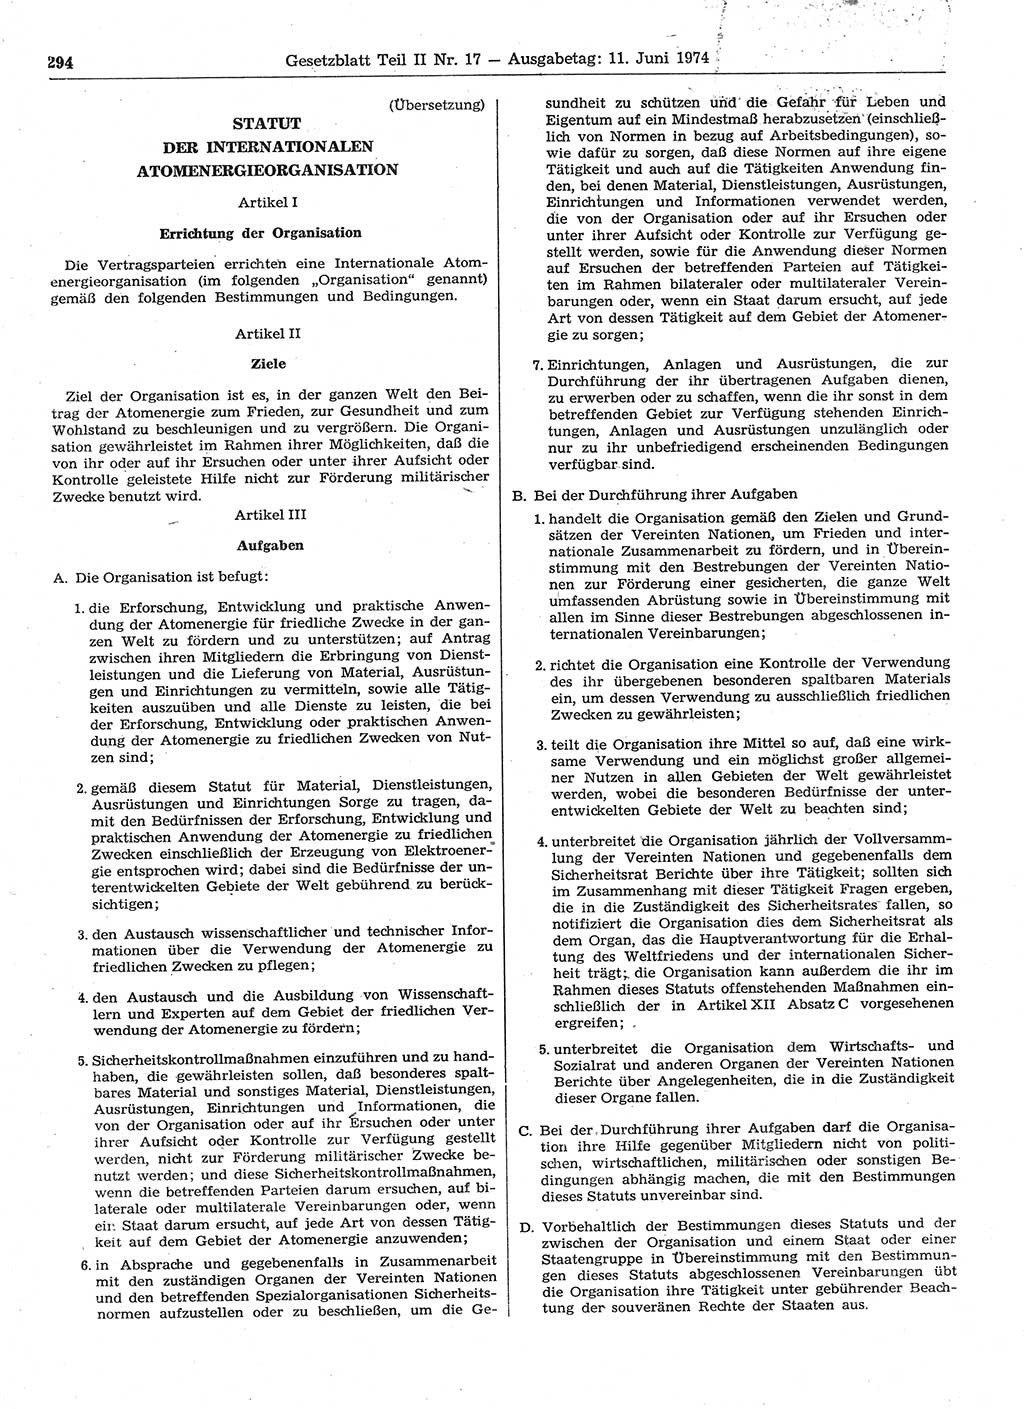 Gesetzblatt (GBl.) der Deutschen Demokratischen Republik (DDR) Teil ⅠⅠ 1974, Seite 294 (GBl. DDR ⅠⅠ 1974, S. 294)